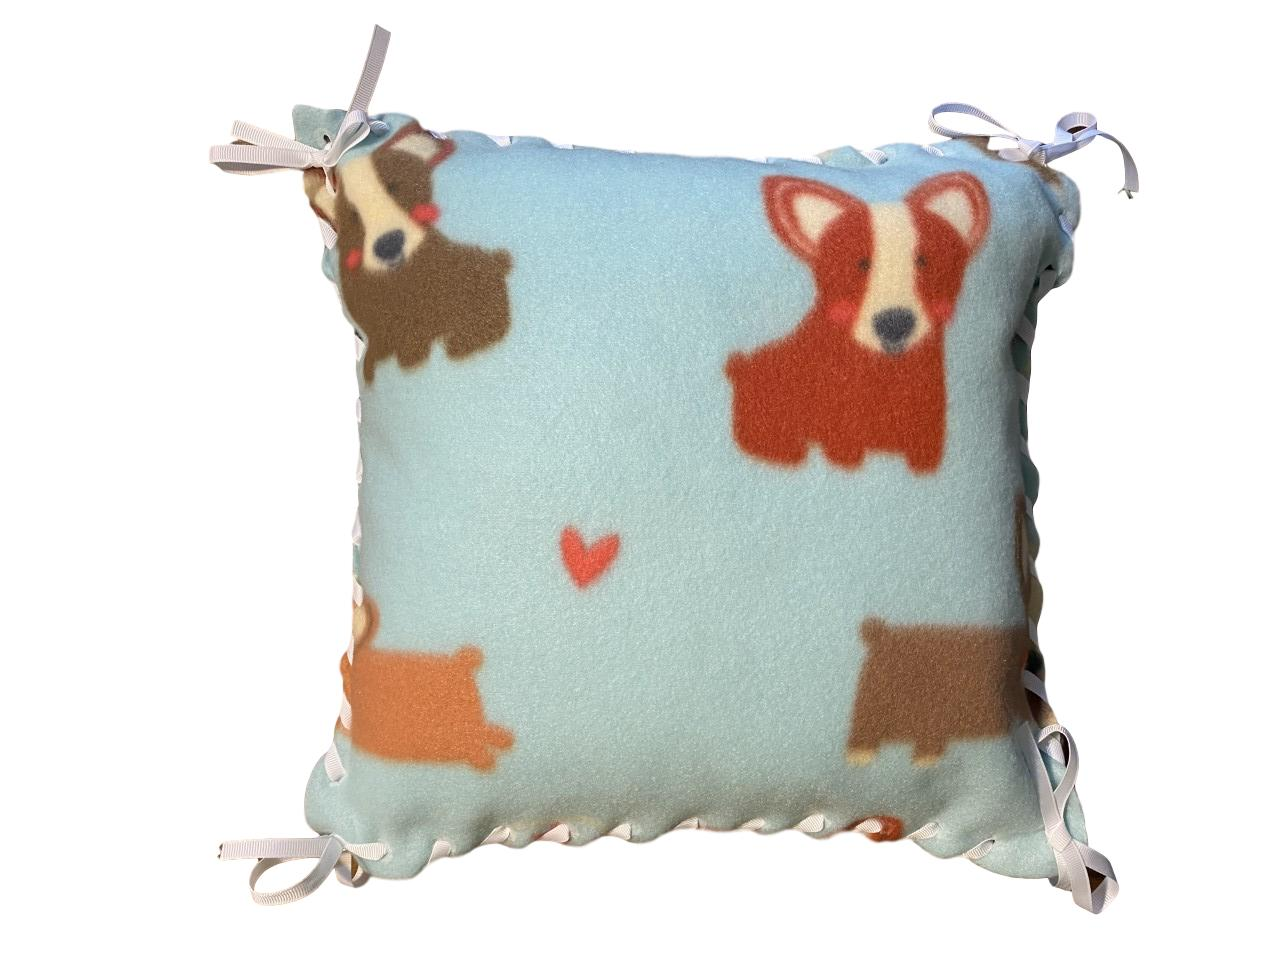 Fleece Pillow Kit light teal with Brown, Rust, and Tan Corgi dog pattern